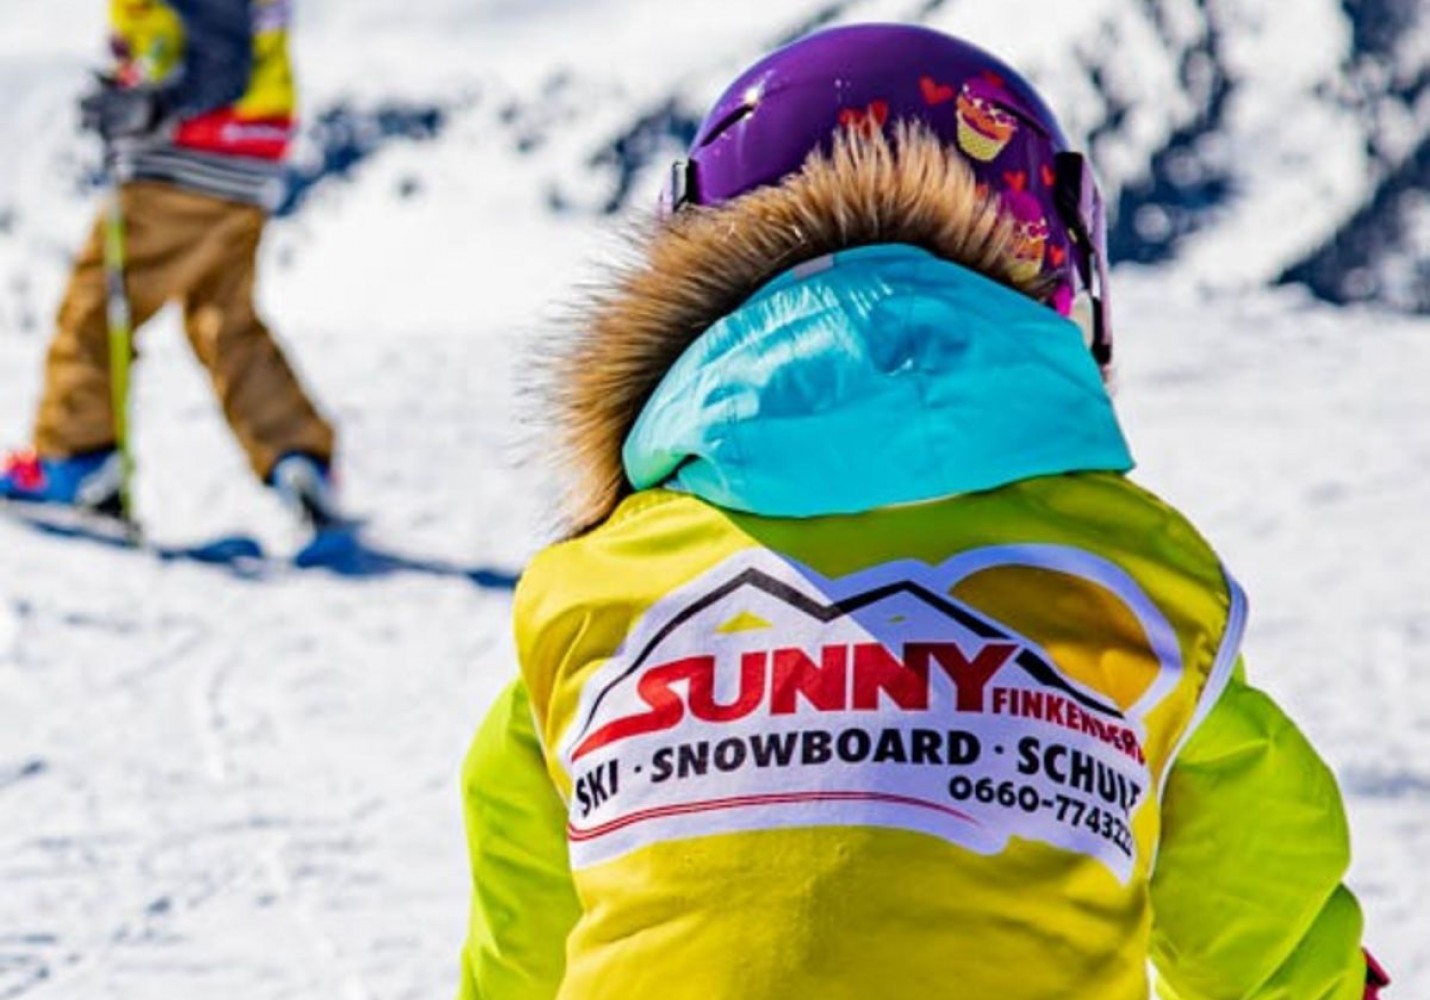 Kinderskirennen der Skischule Sunny